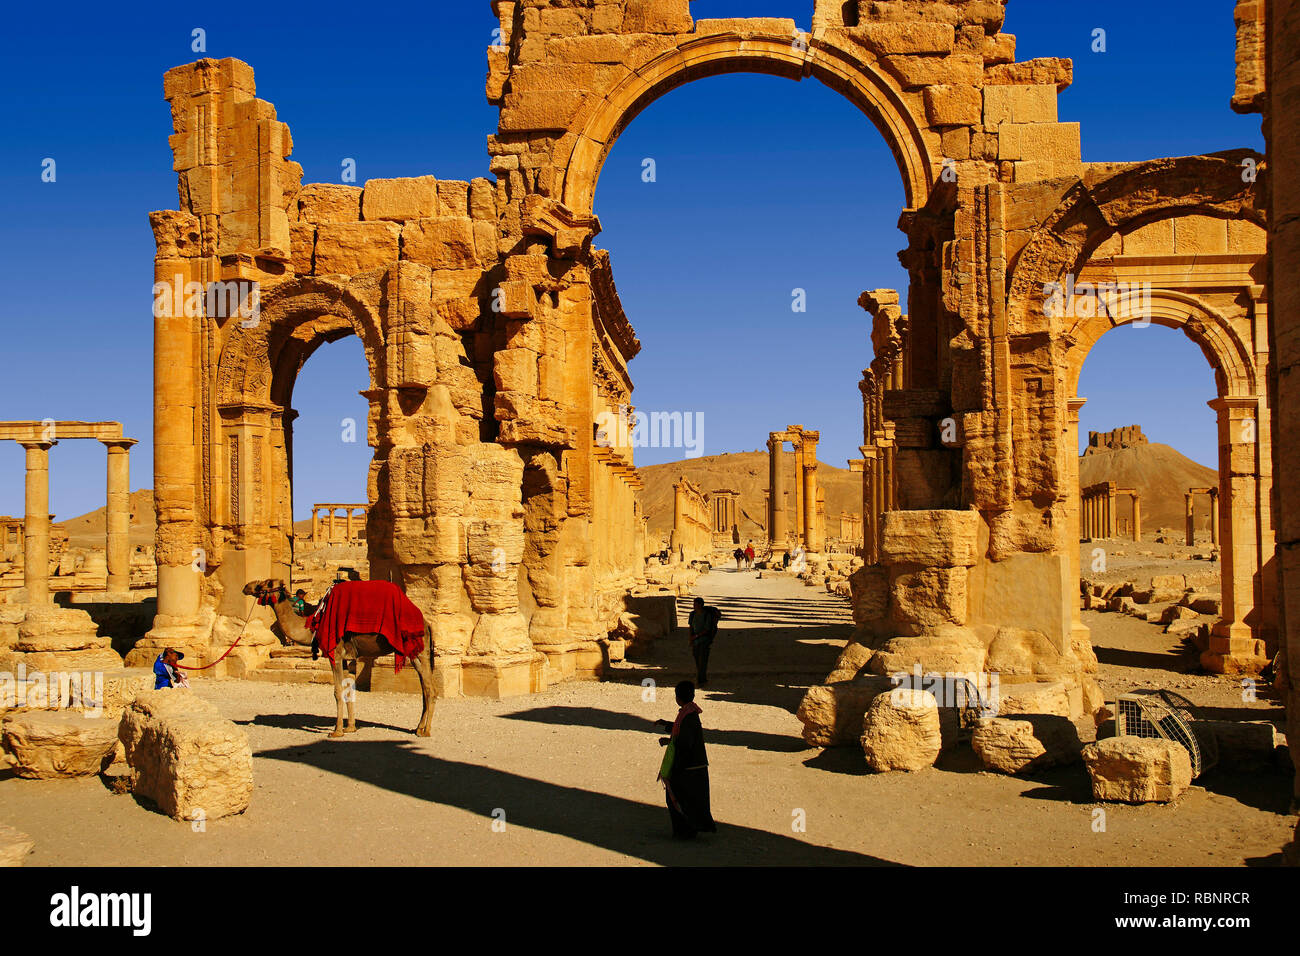 Arco monumentale e colonne e il castello arabo. Le rovine della vecchia Greco città romana di Palmyra. Siria, Medio Oriente Foto Stock